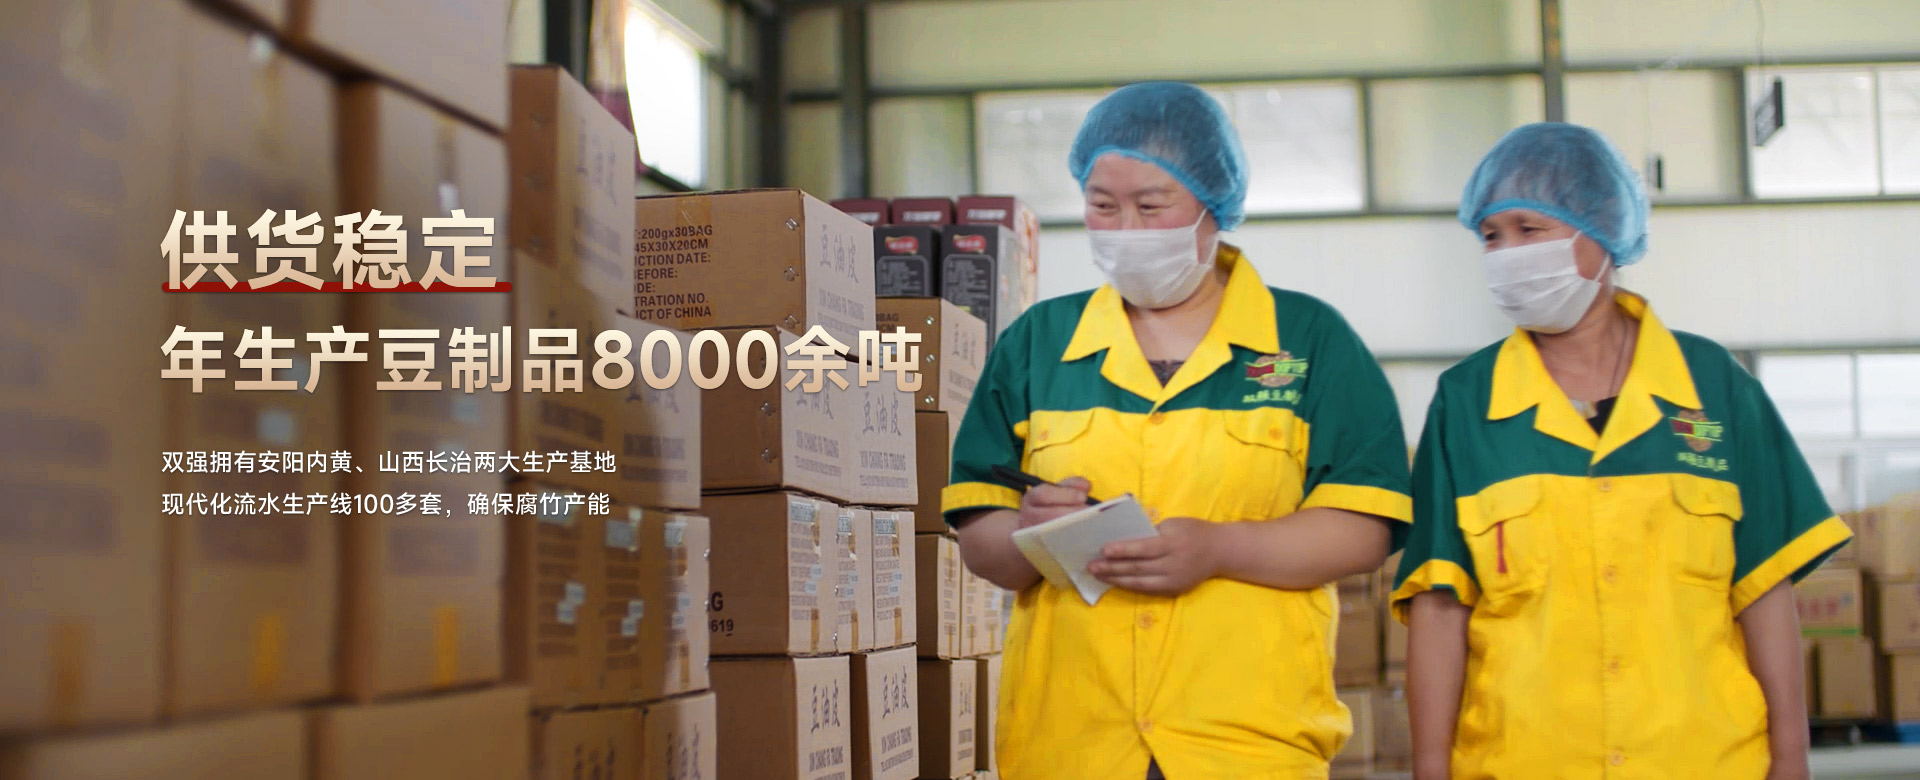 雙強腐竹  供貨穩定 年生產豆制品8000余噸